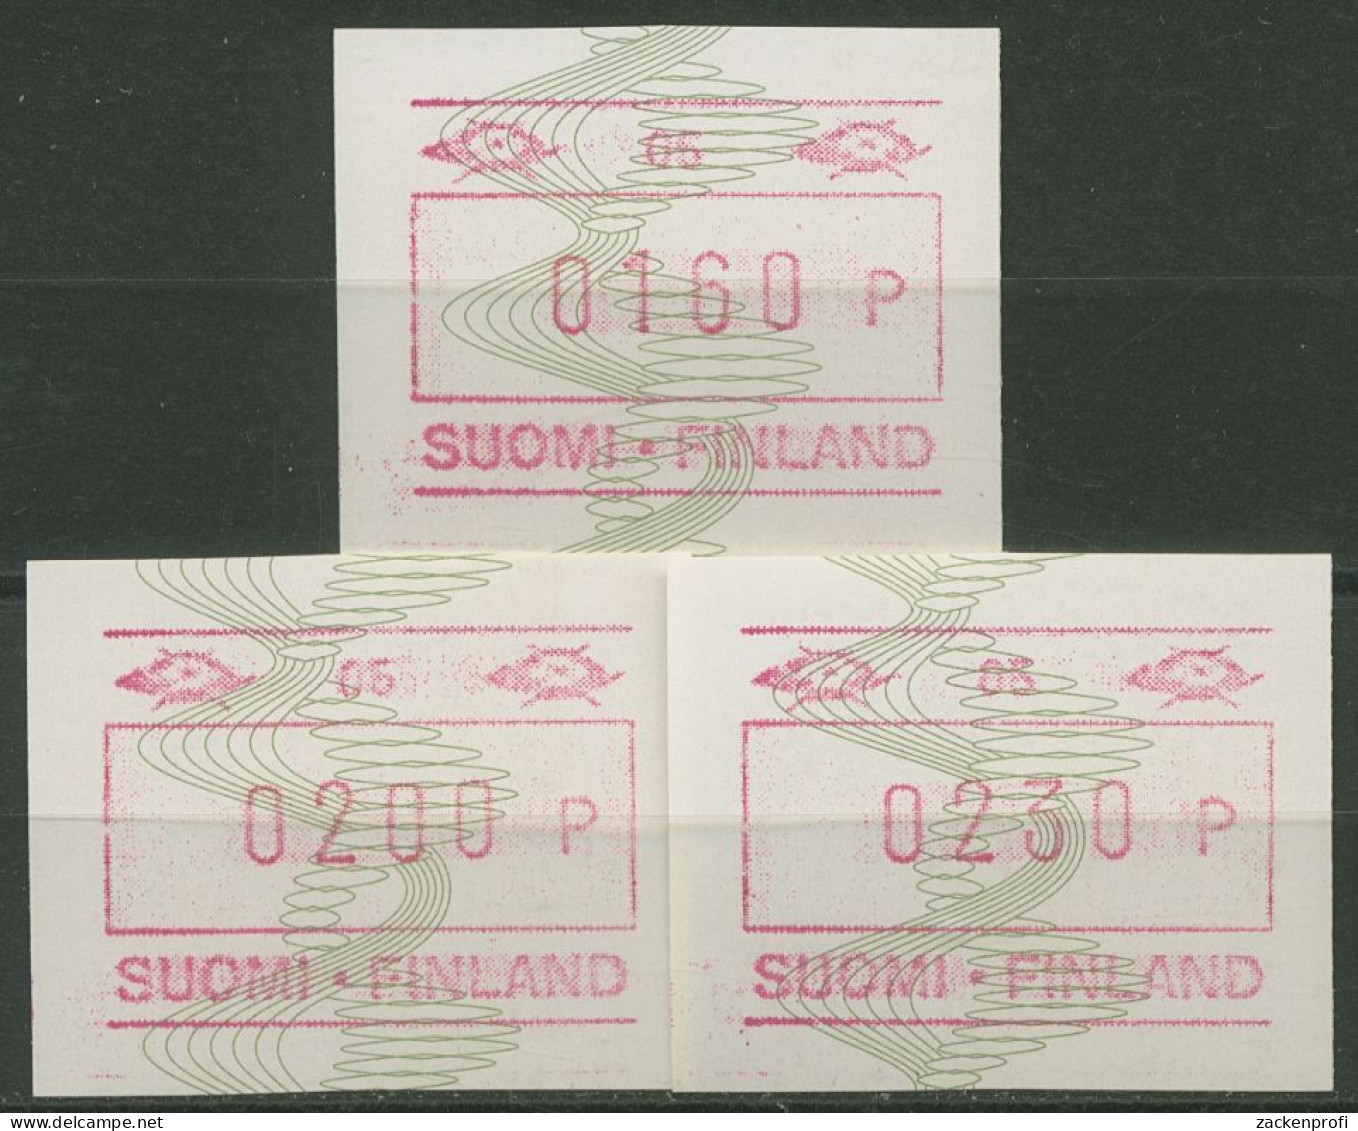 Finnland ATM 1993 Automat 05 Breite Ziffern ATM 14.2 S1 Postfrisch - Automatenmarken [ATM]